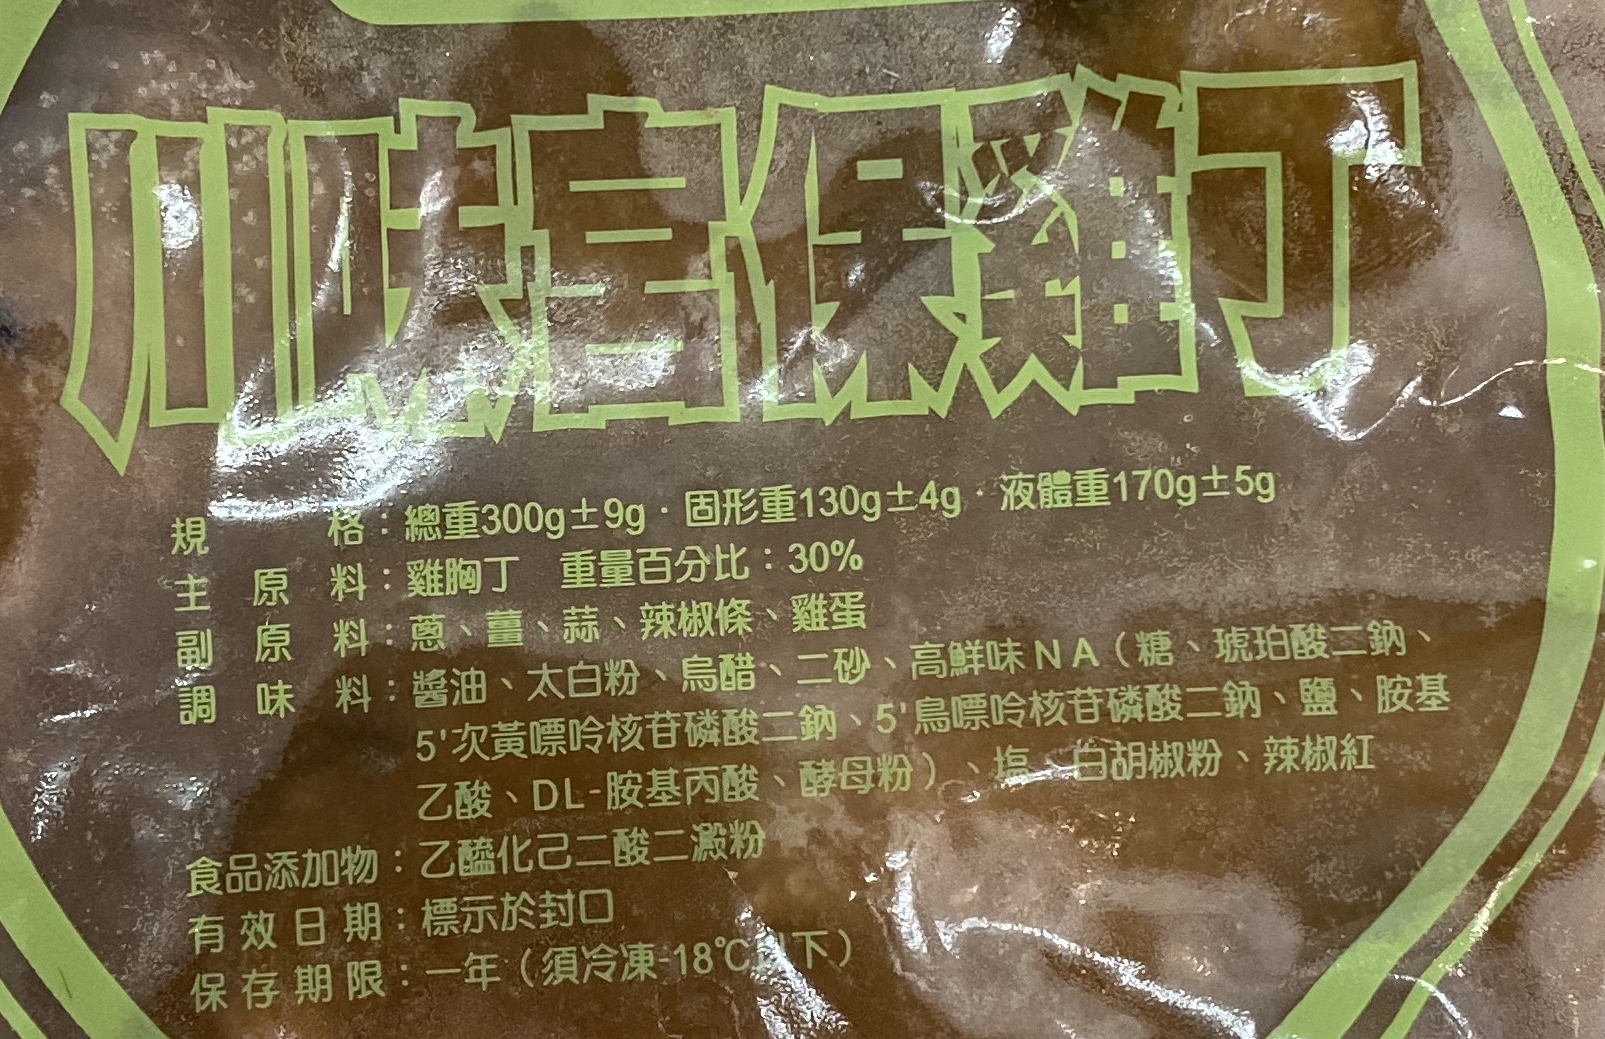 【一等鮮】懶人料理任選(蜜汁烤肉/黑胡椒牛&豬/紅燒牛/宮保雞/咖哩雞)300g